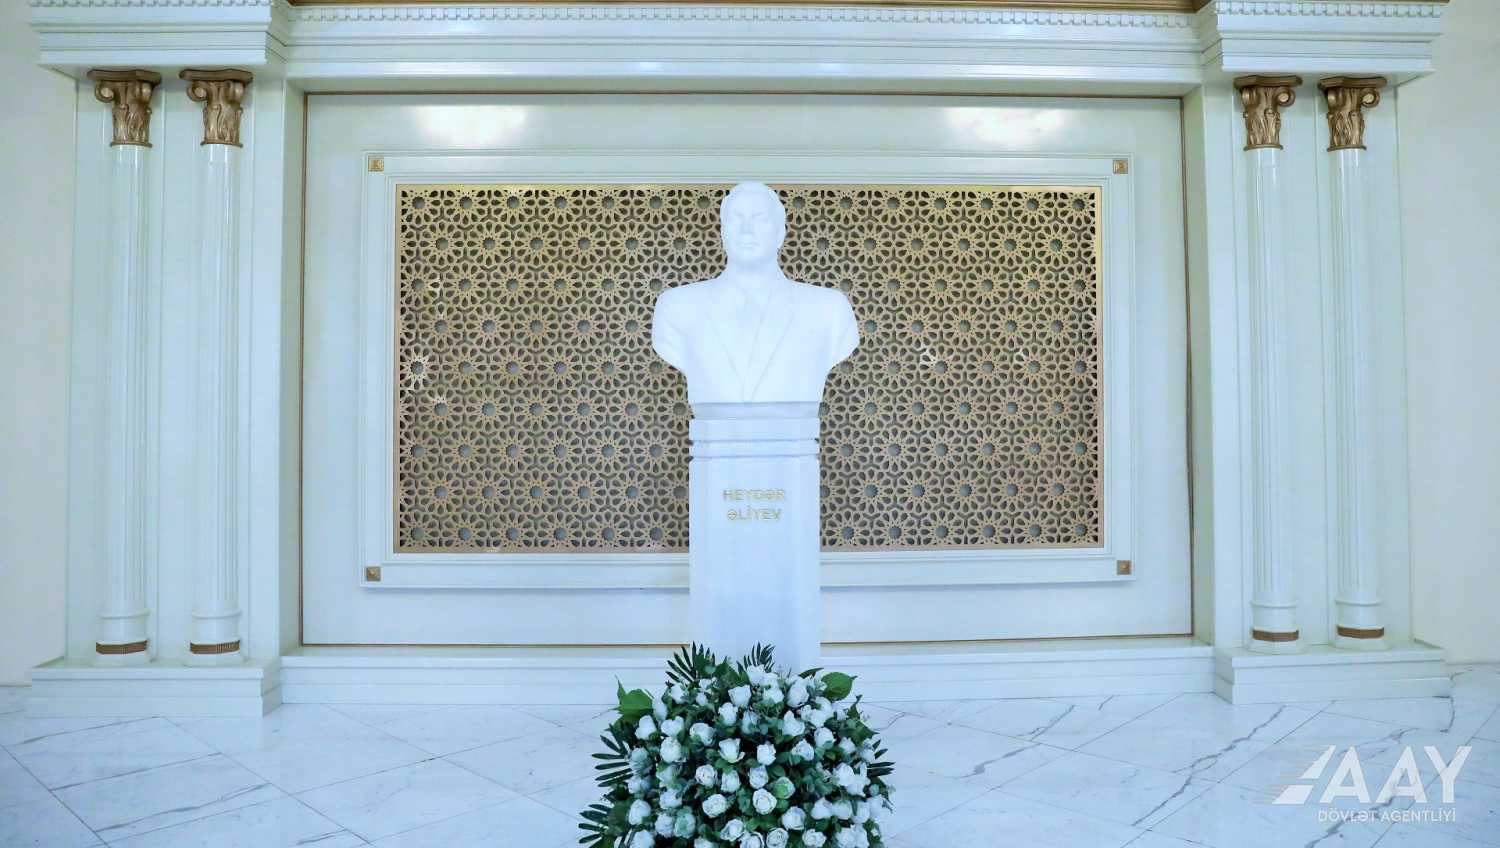 11 AAYDA-də Ümummilli lider Heydər Əliyevin əziz xatirəsi yad edilib